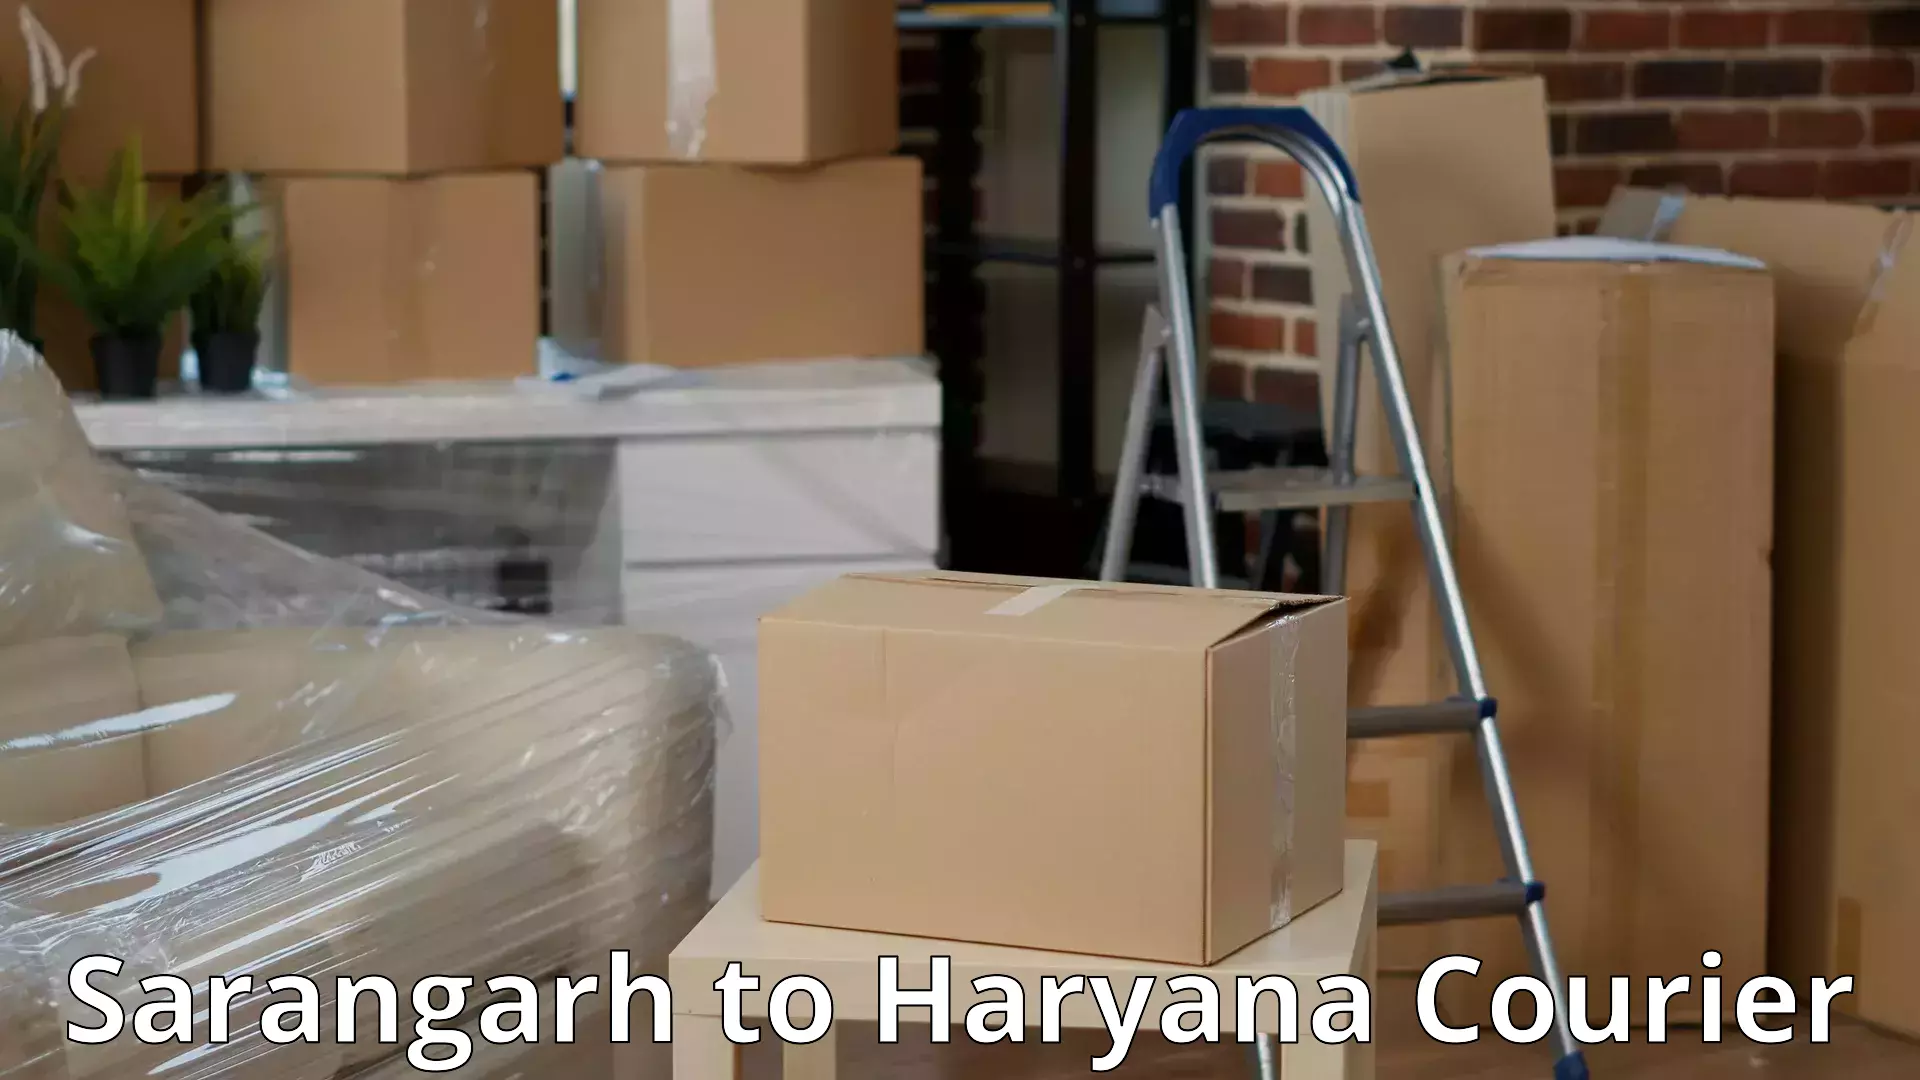 Full-service household moving Sarangarh to Chirya